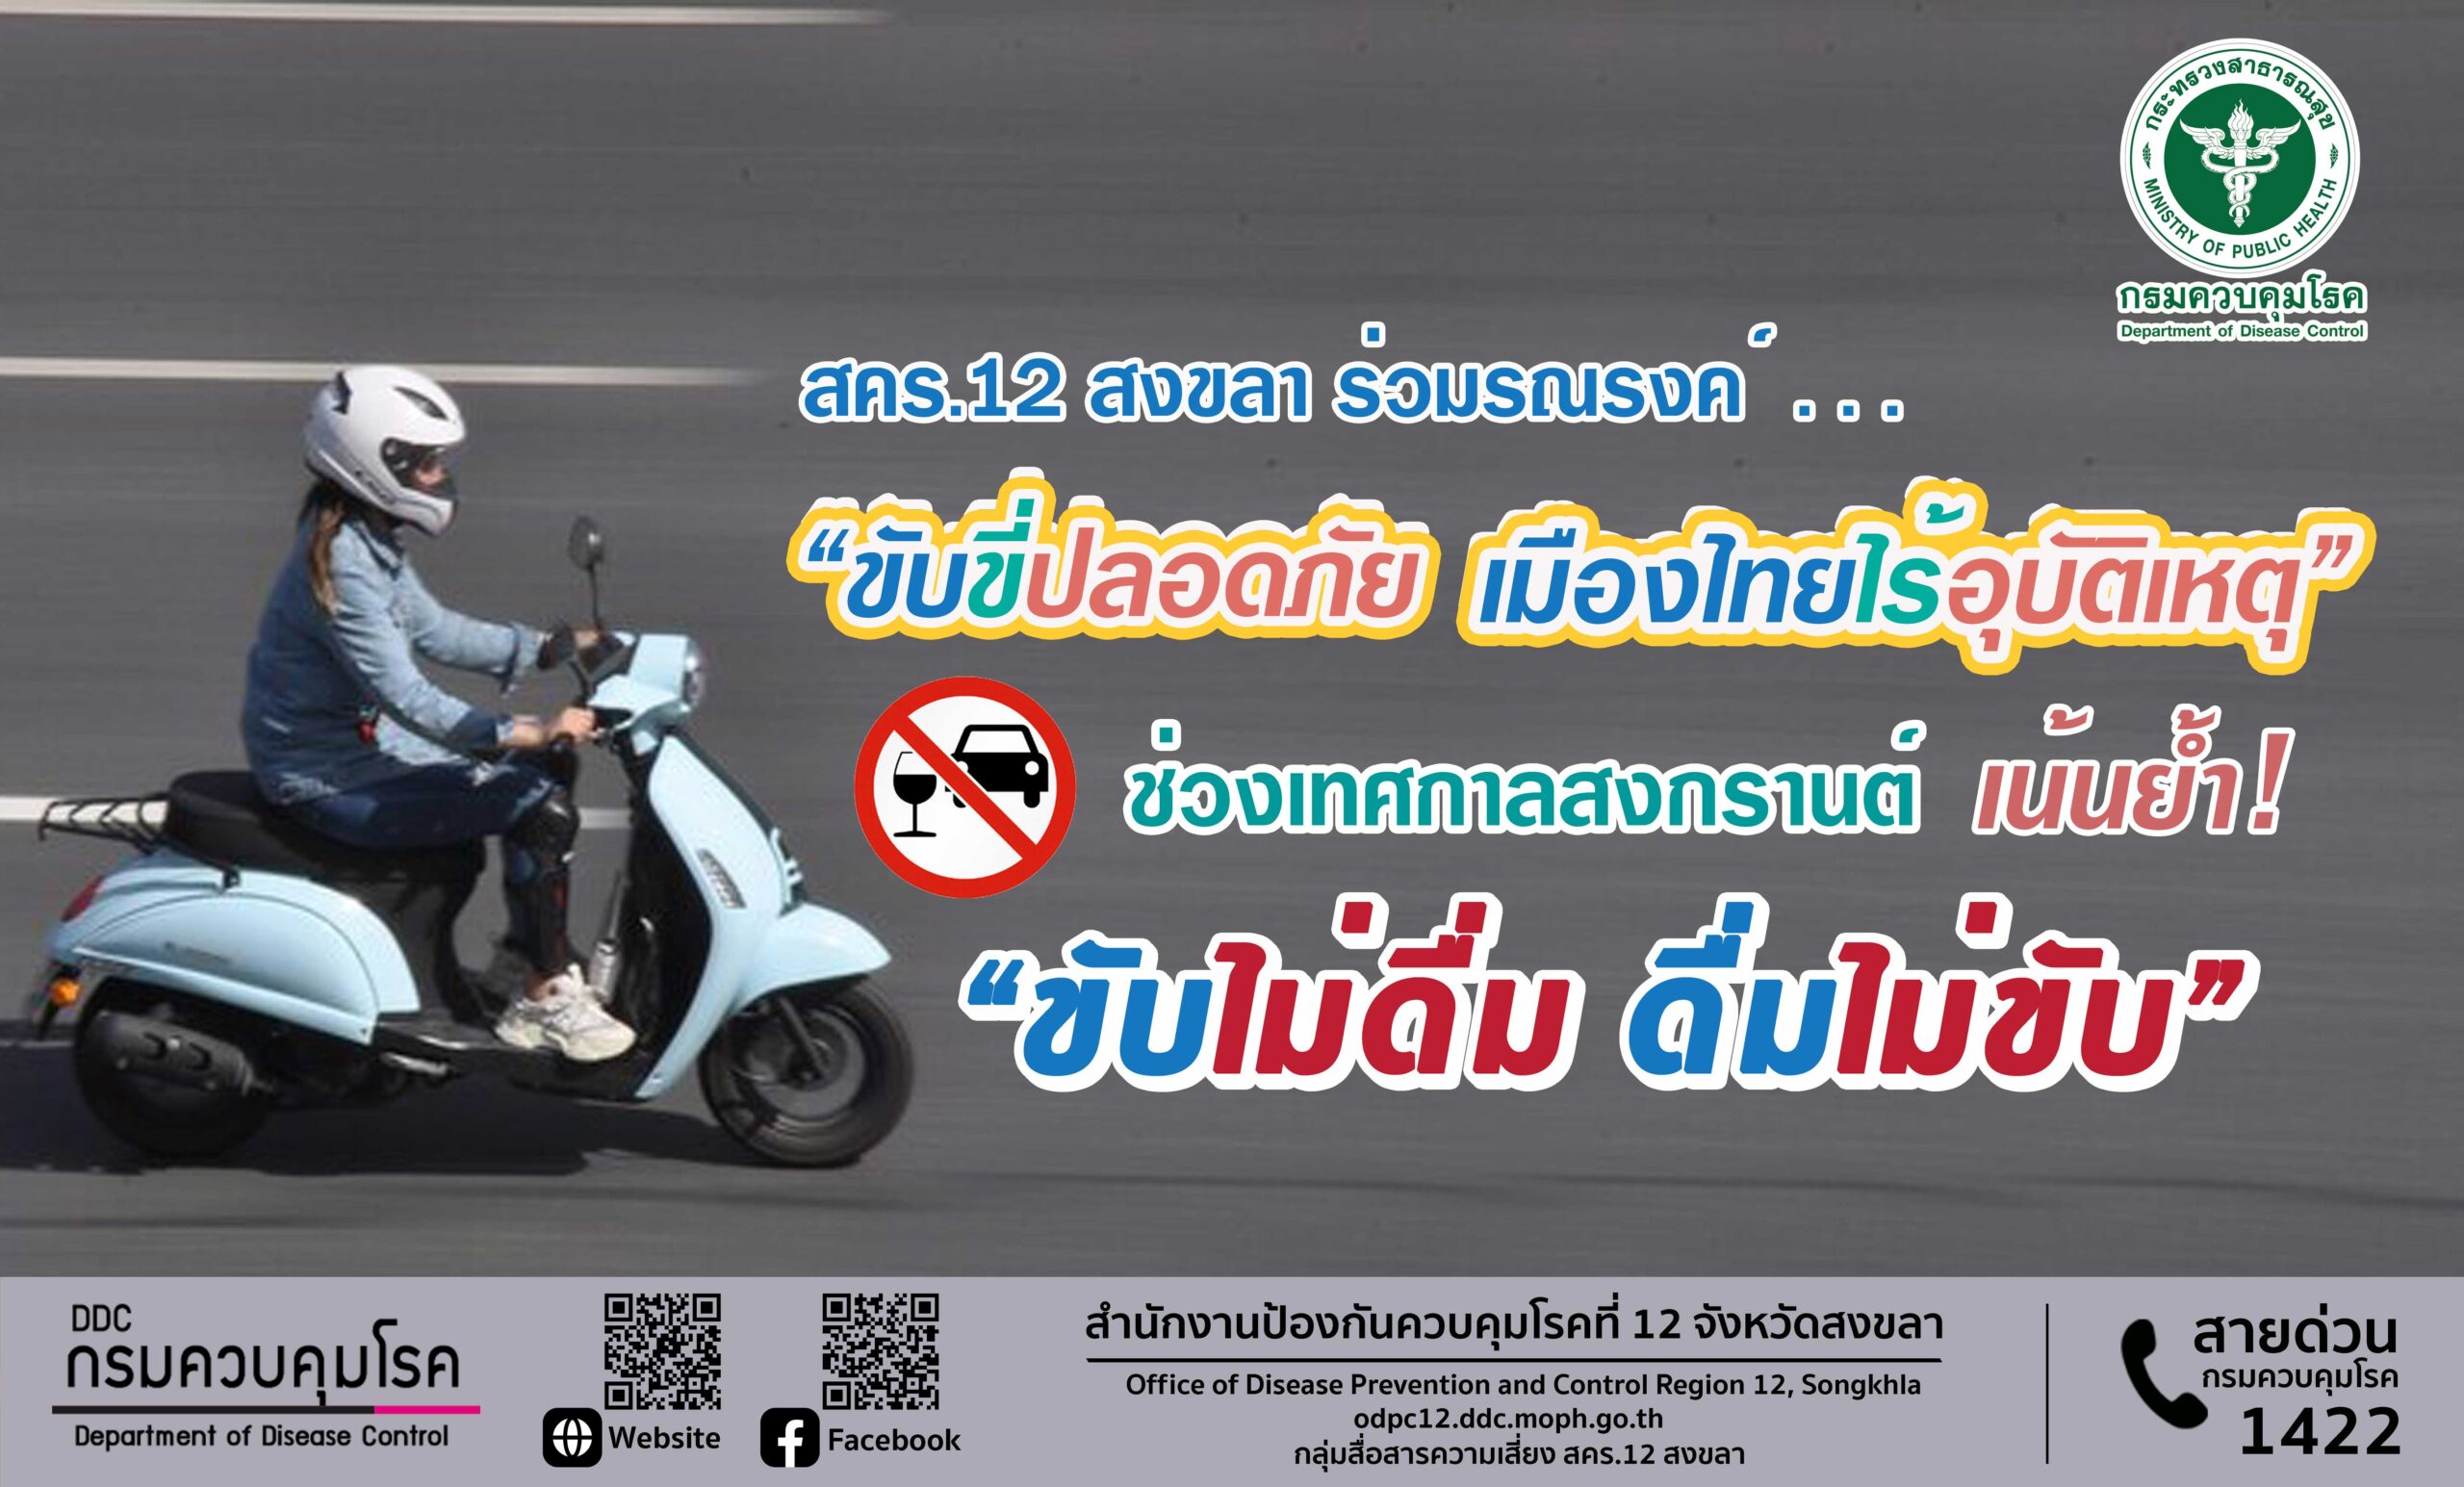 สคร.12 สงขลา ร่วมรณรงค์ “ขับขี่ปลอดภัย เมืองไทยไร้อุบัติเหตุ”  ช่วงเทศกาลสงกรานต์  เน้นย้ำ “ขับไม่ดื่ม ดื่มไม่ขับ”